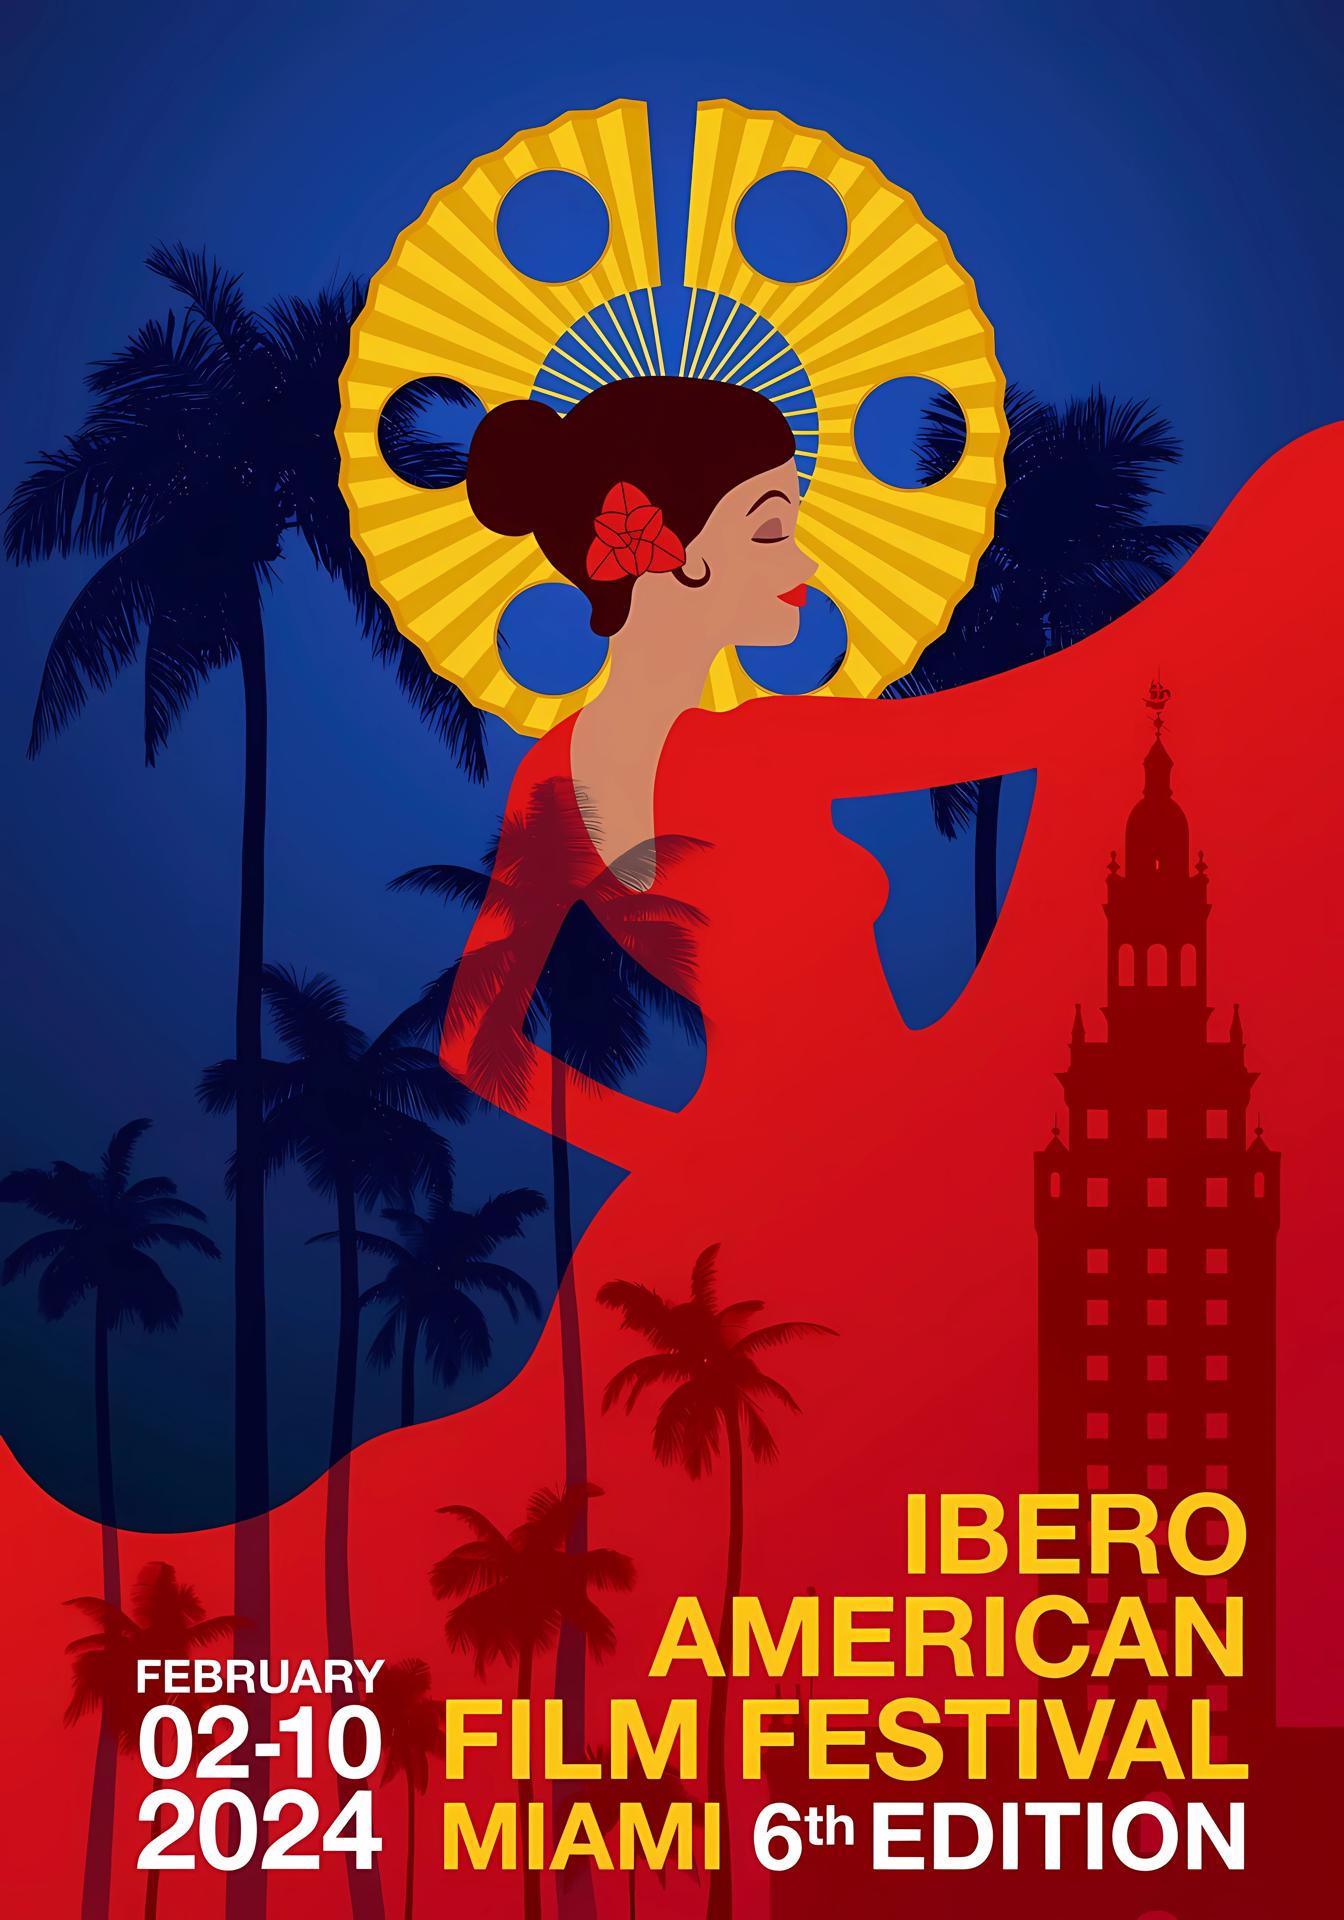 Imagen cedida por el Festival de Cine Iberoamericano de Miami (IAFFM) donde se muestra el cartel de su sexta edición, que se celebrará del 2 al 10 de febrero próximo, con más de una veintena de películas de ocho países de Iberoamérica. EFE/ IAFFM / SOLO USO EDITORIAL/ SOLO DISPONIBLE PARA ILUSTRAR LA NOTICIA QUE ACOMPAÑA (CRÉDITO OBLIGATORIO)